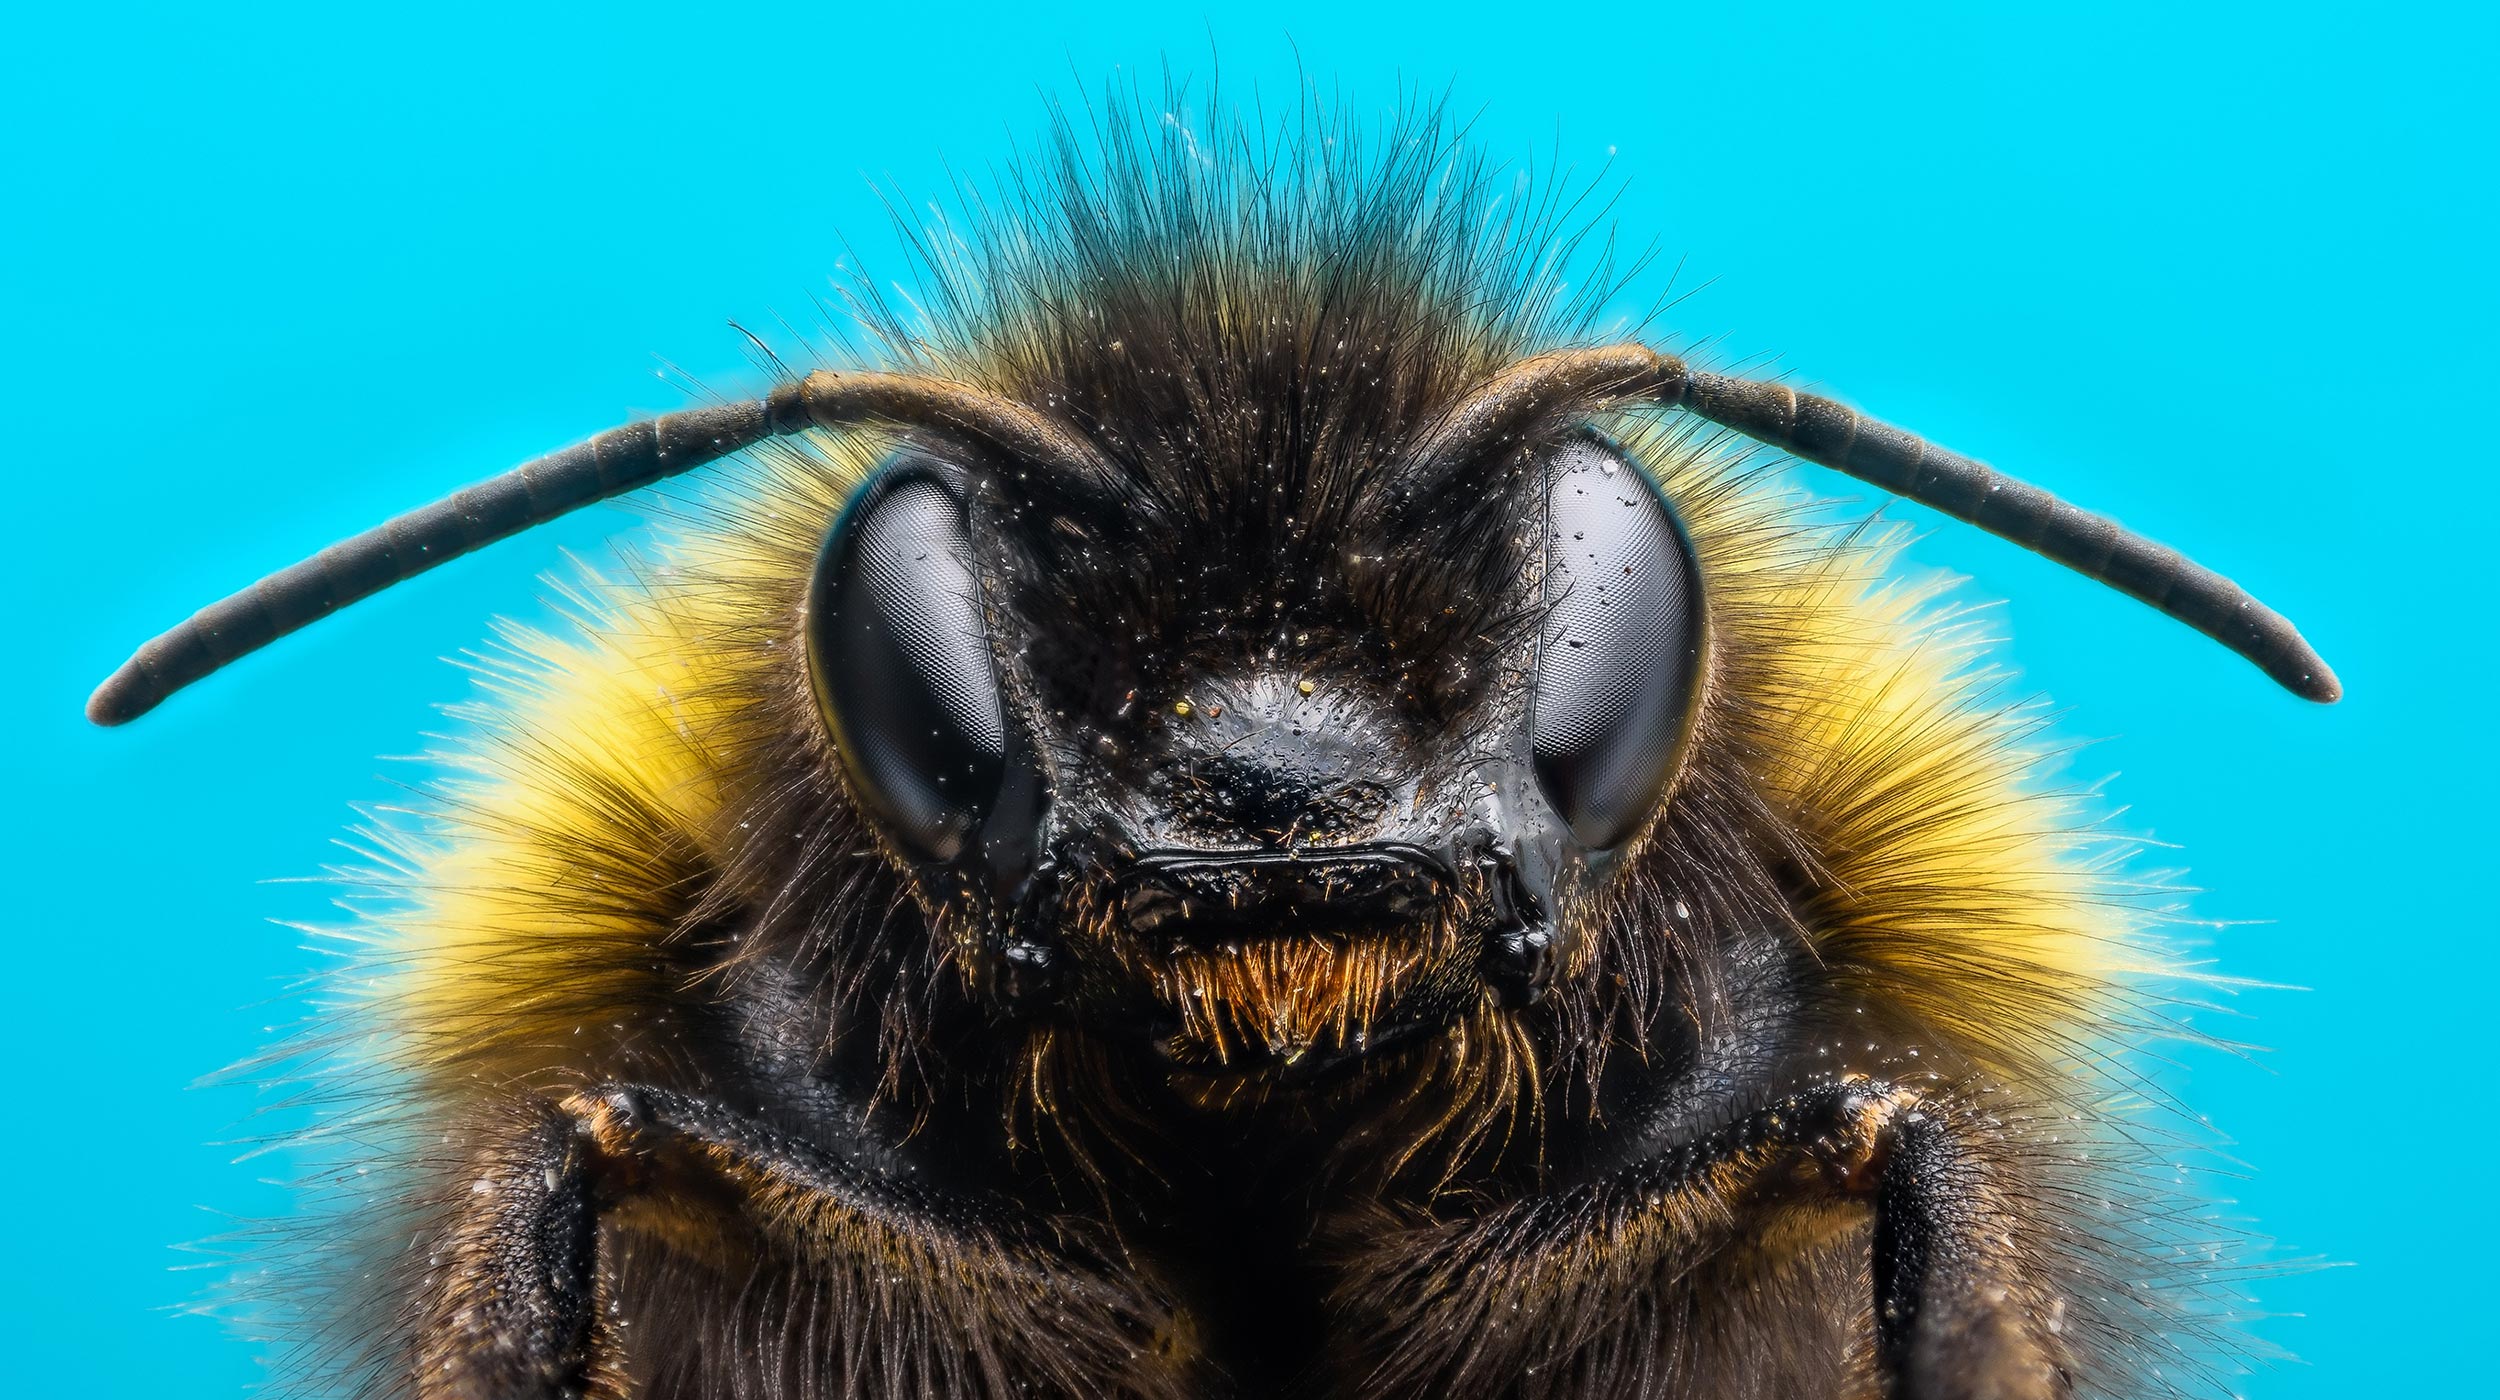 Bombus arıları diğer arıları izleyerek bulmaca çözmeyi öğrenirler.